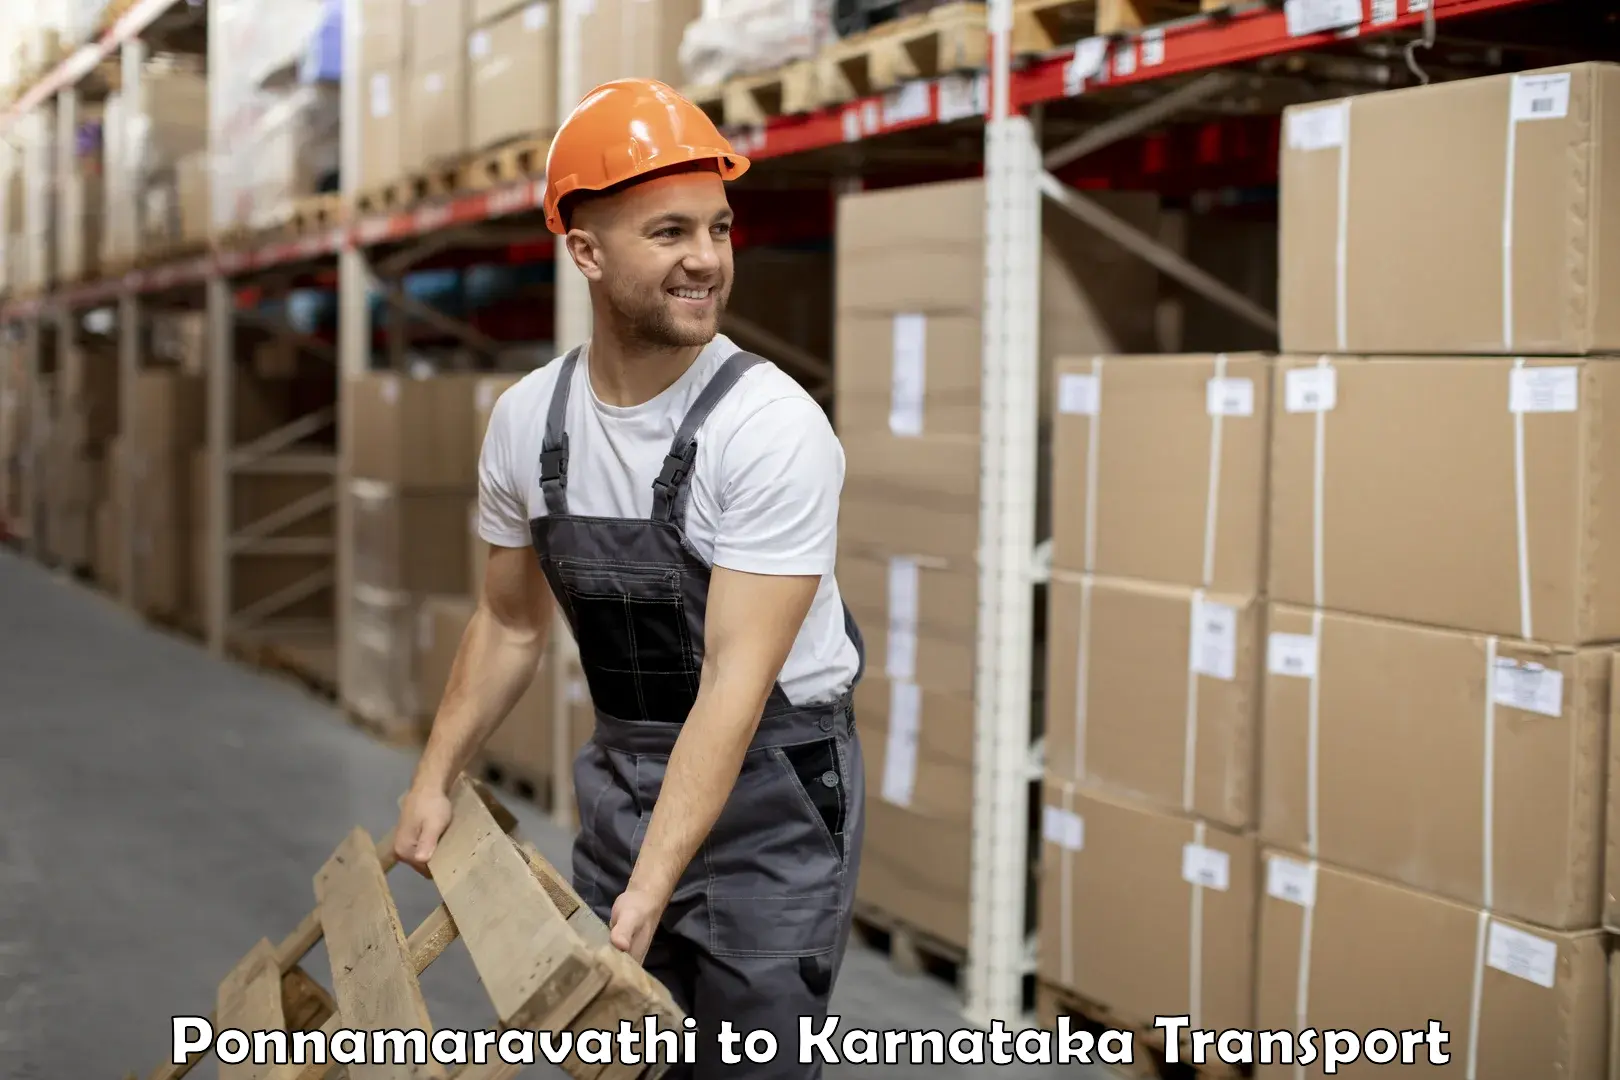 Online transport service Ponnamaravathi to Karnataka